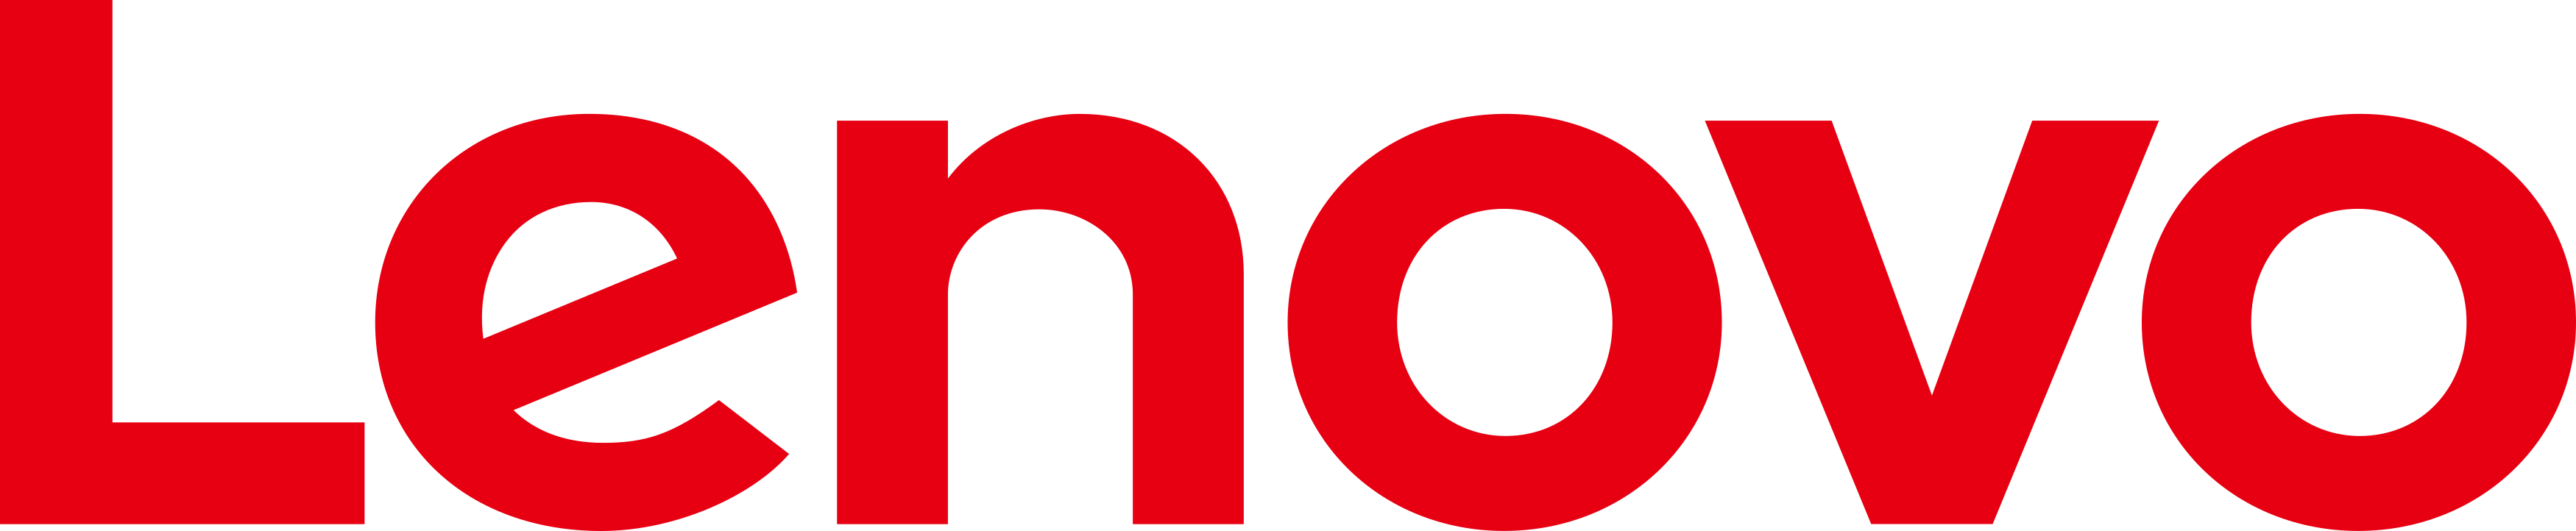 lenovo logo 1 - Lenovo Logo